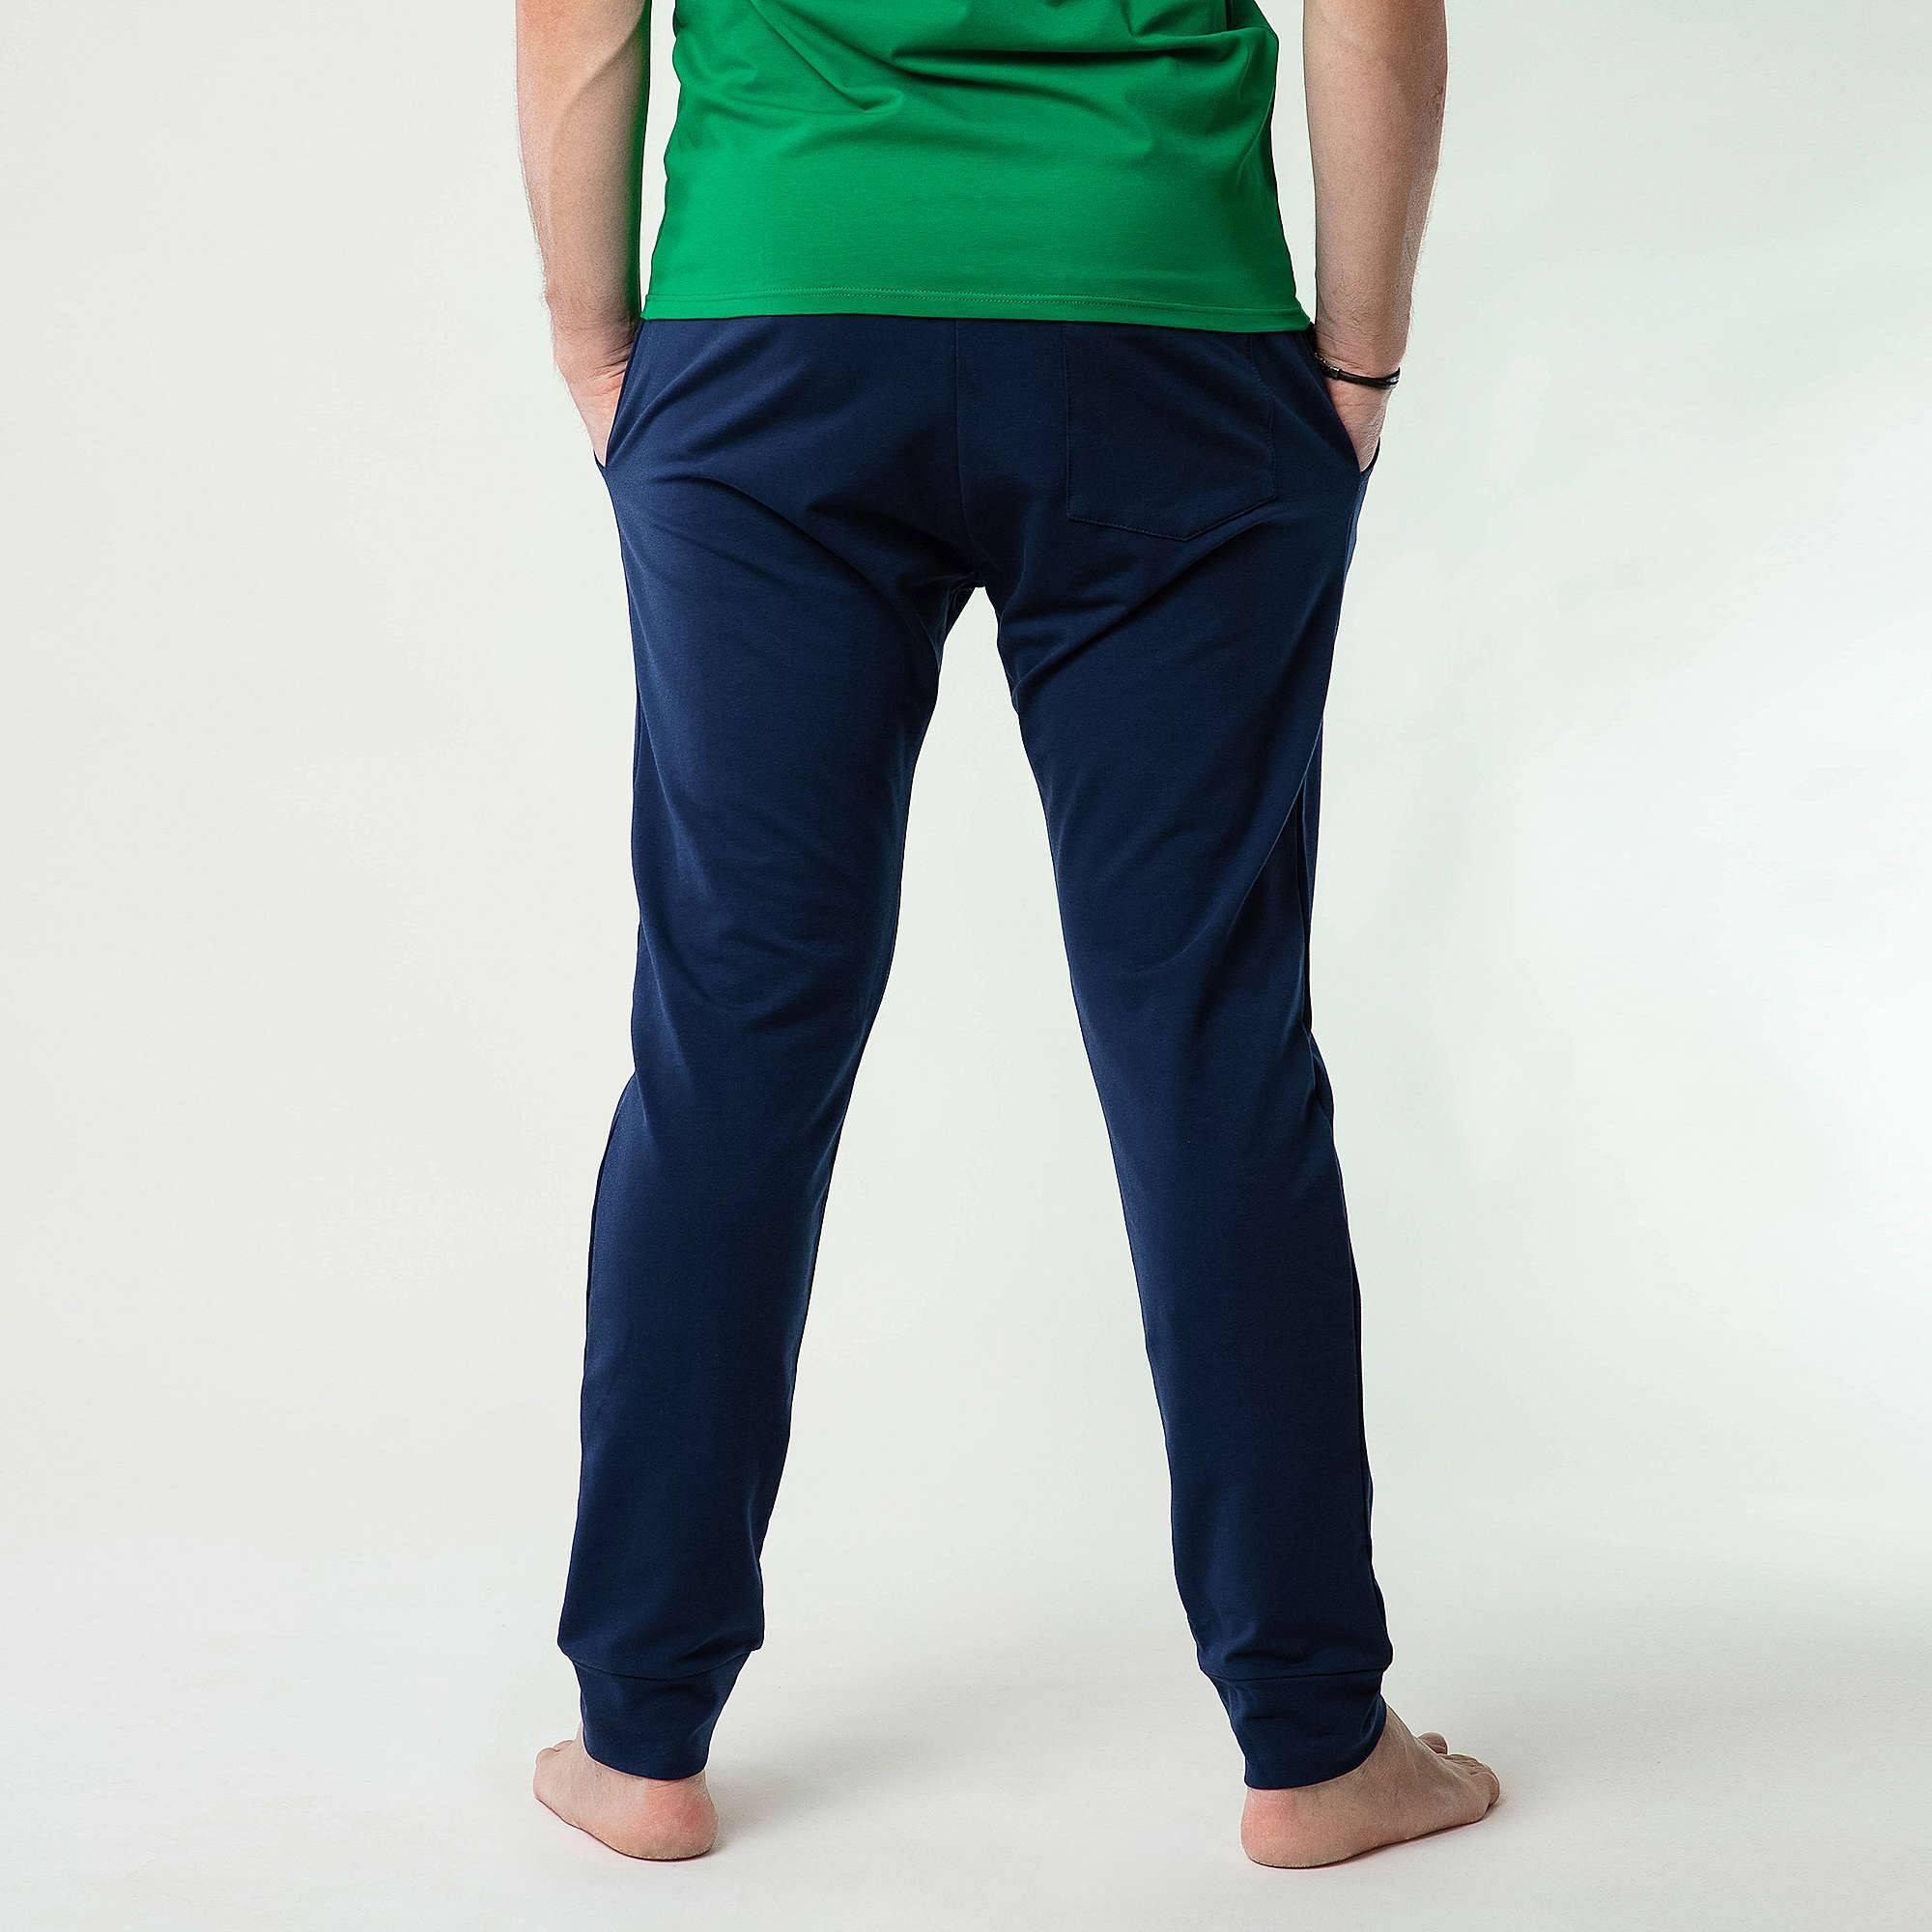 Granatowe spodnie dresowe męskie BASIC PANTS 122 T NAVY